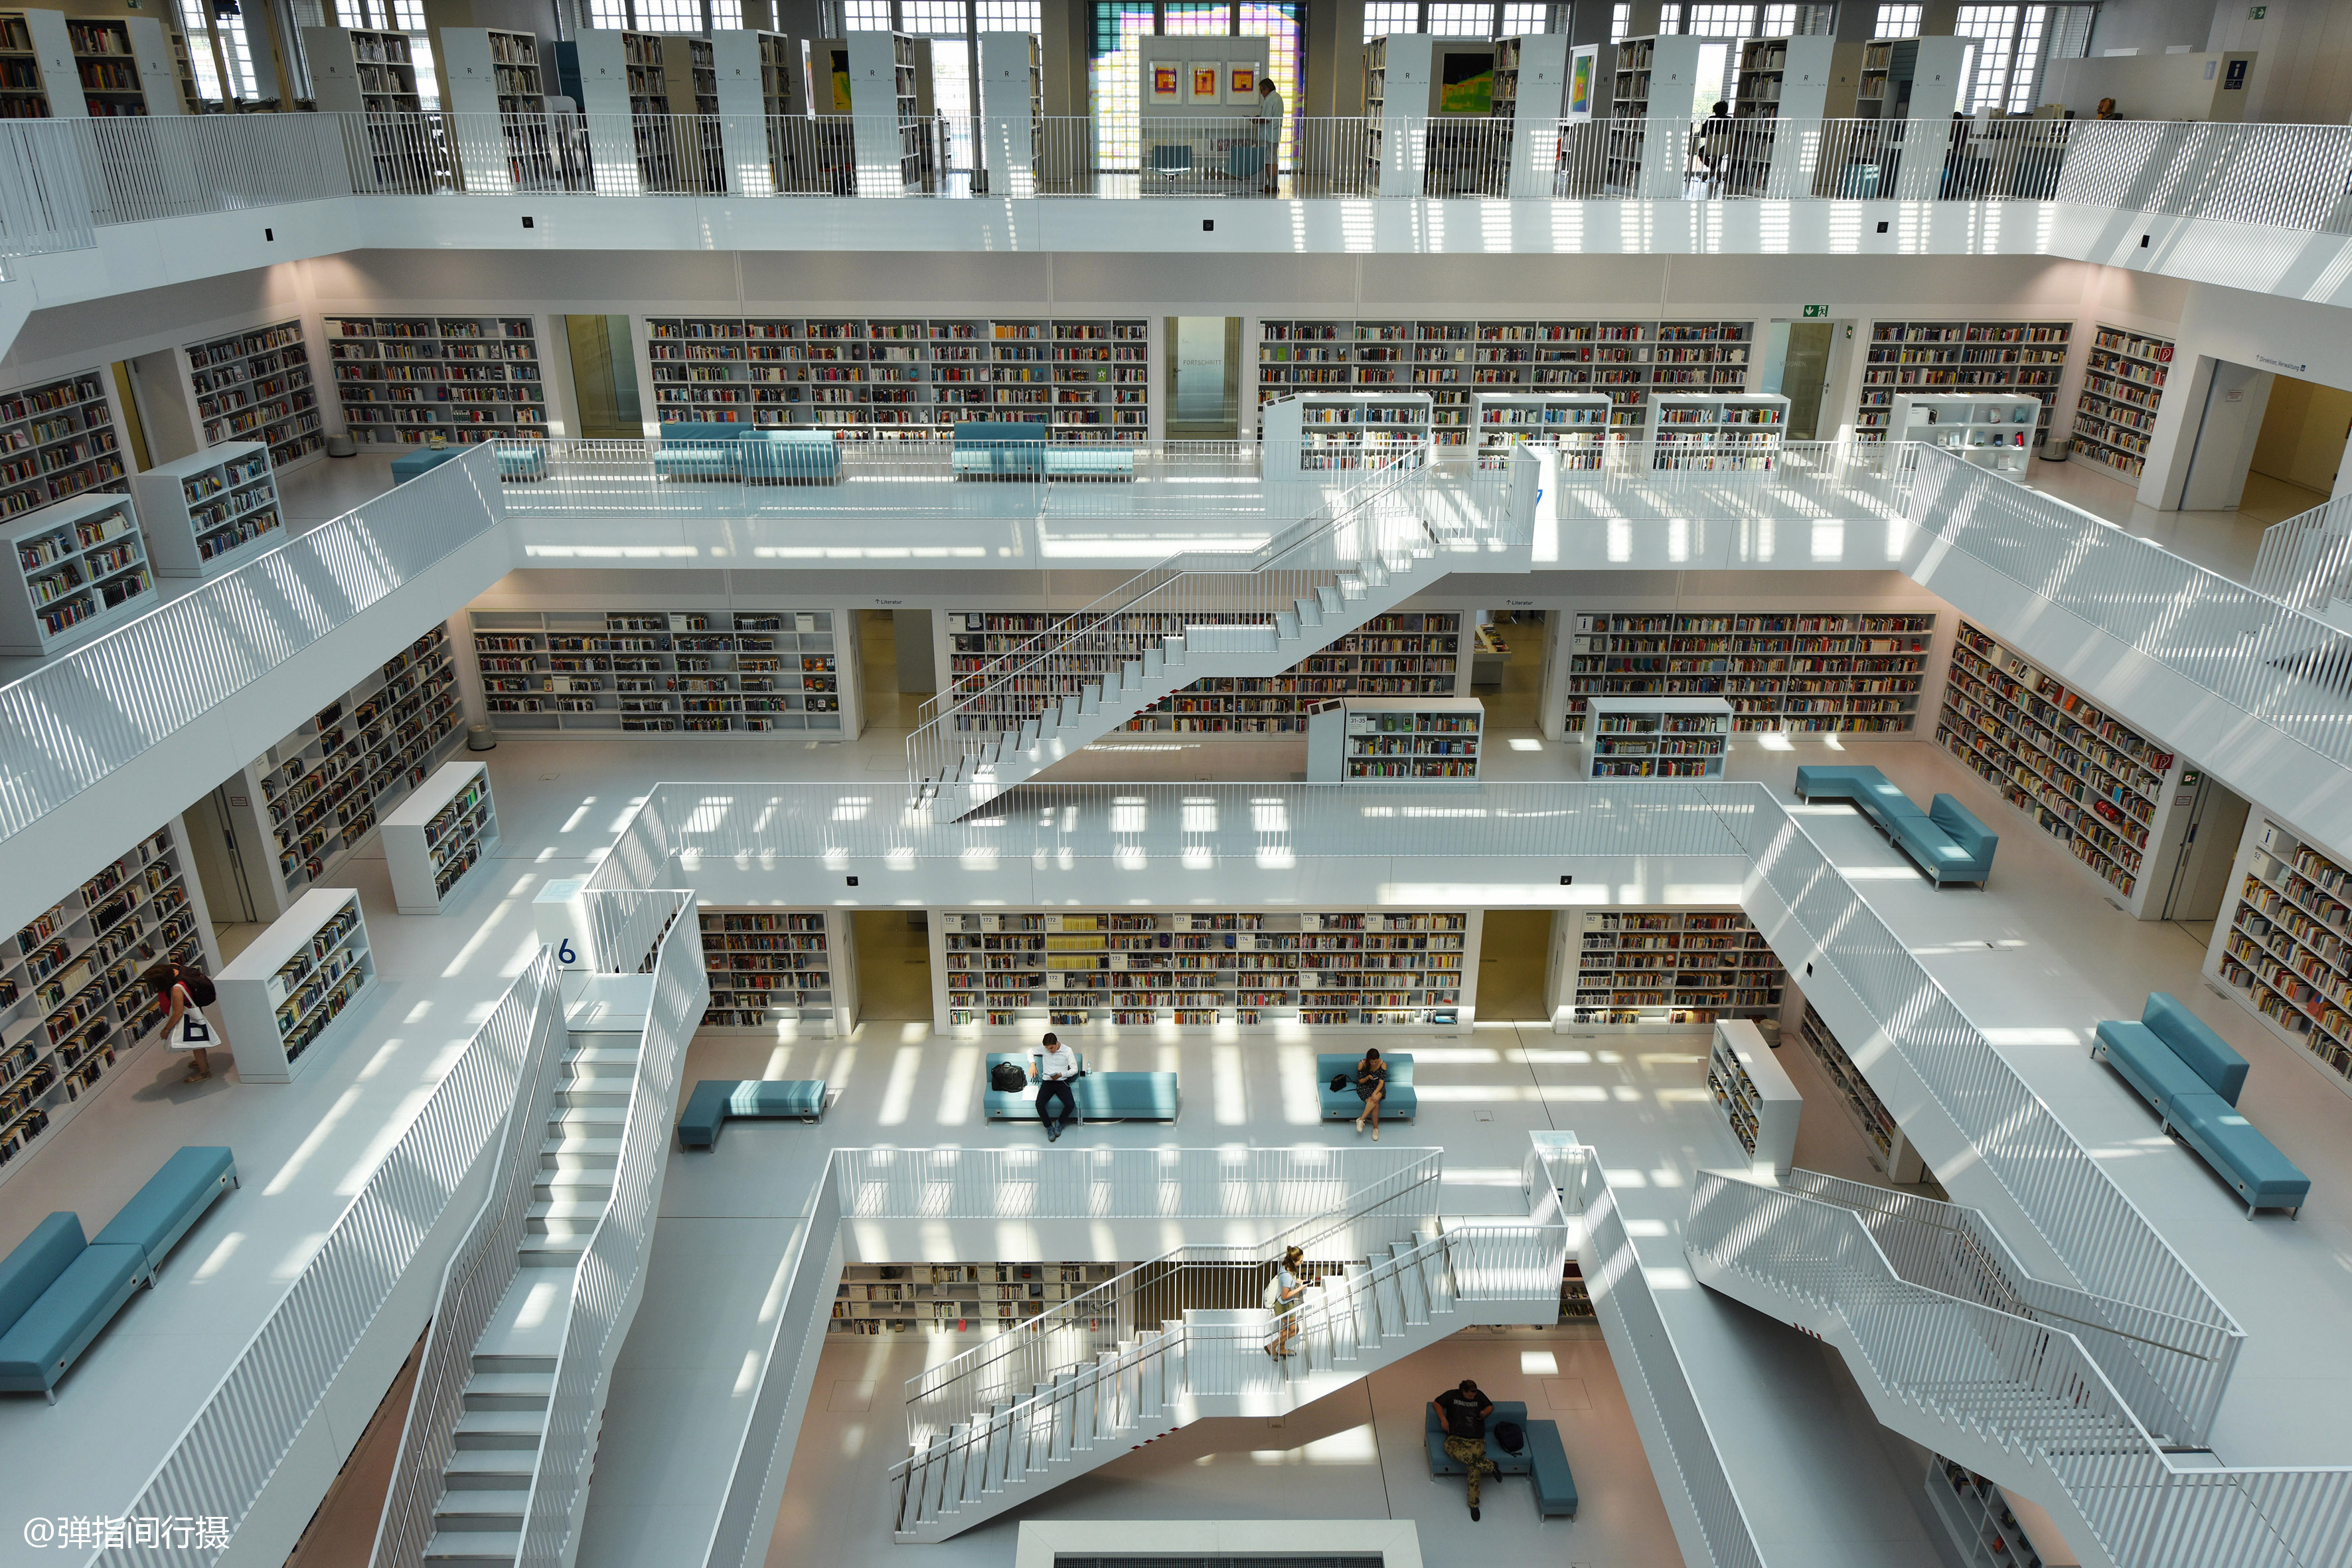 世界读书日看世界最美图书馆,耗资79亿欧元打造,你